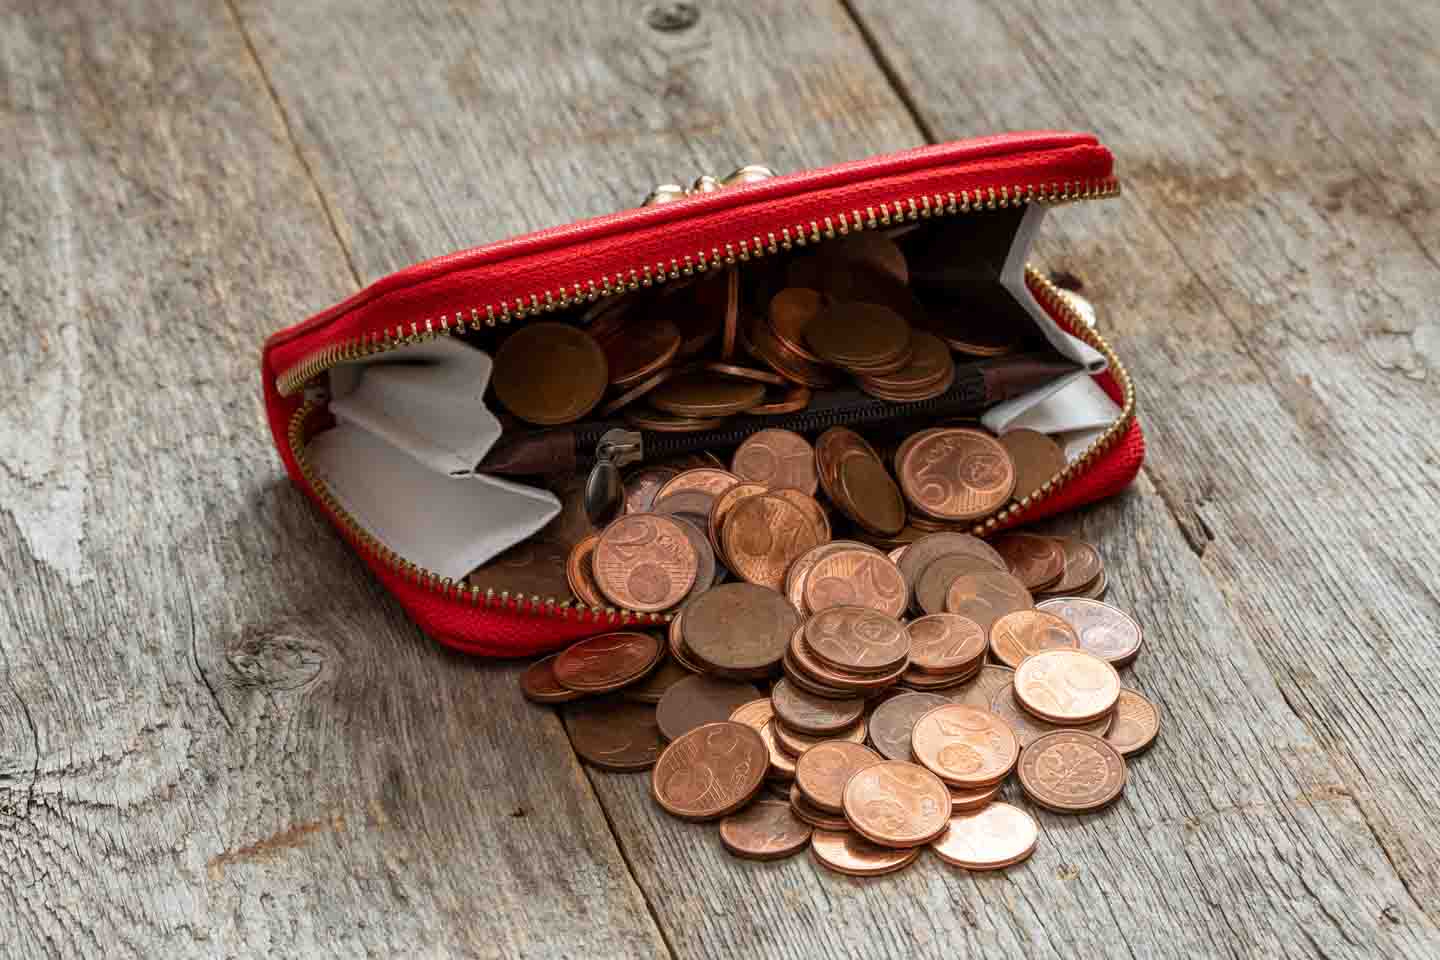 Kupfergeld quillt aus einem roten Geldbeutel, der auf einem Holztisch liegt.